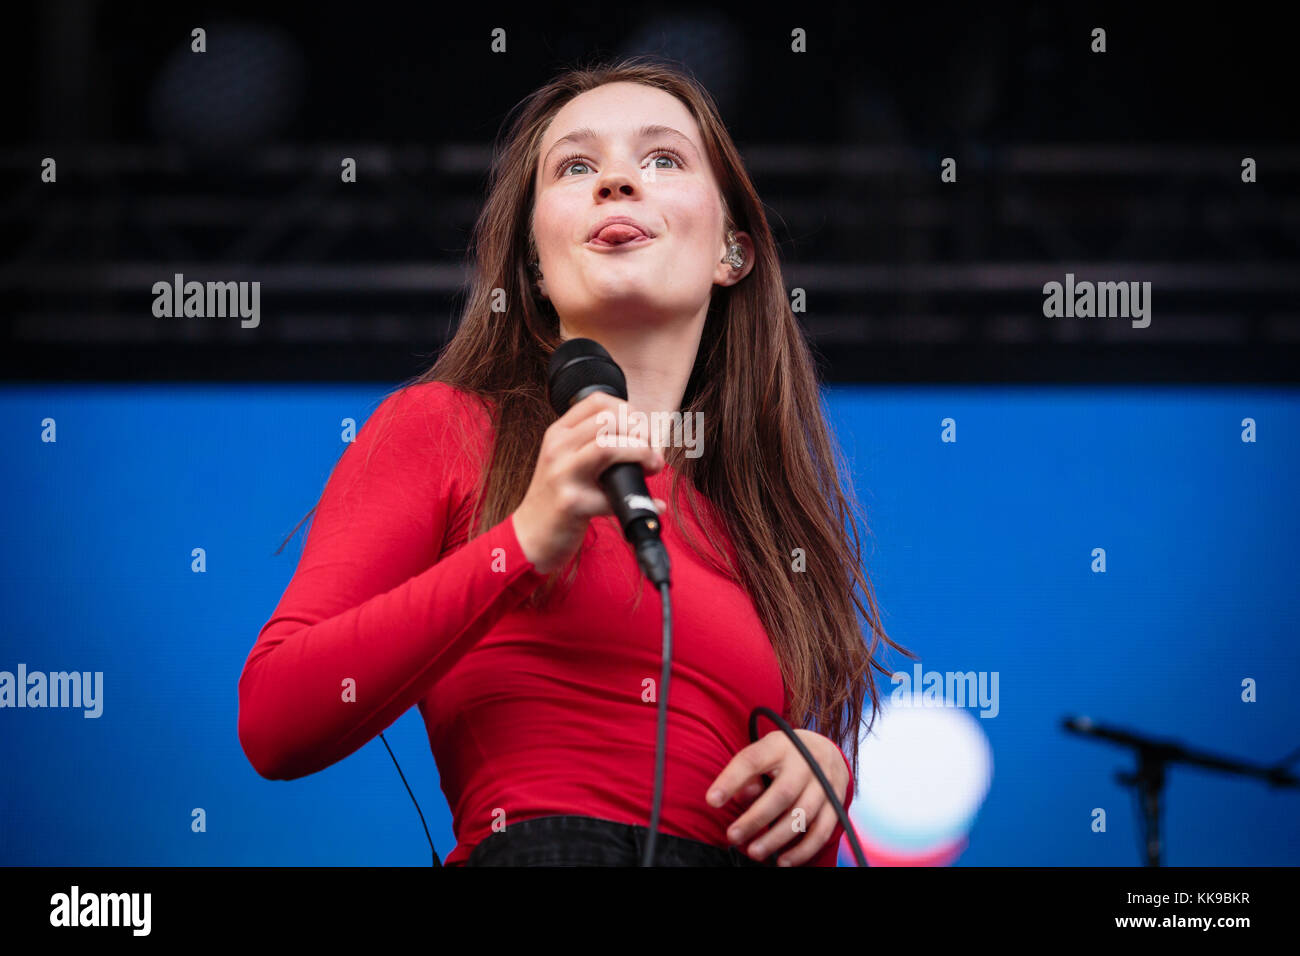 La chanteuse et compositrice norvégienne Sigrid effectue un concert live au cours de la fête de la musique 2017 Bergenfest norvégien de Bergen. La Norvège, 15/06 2017. Banque D'Images